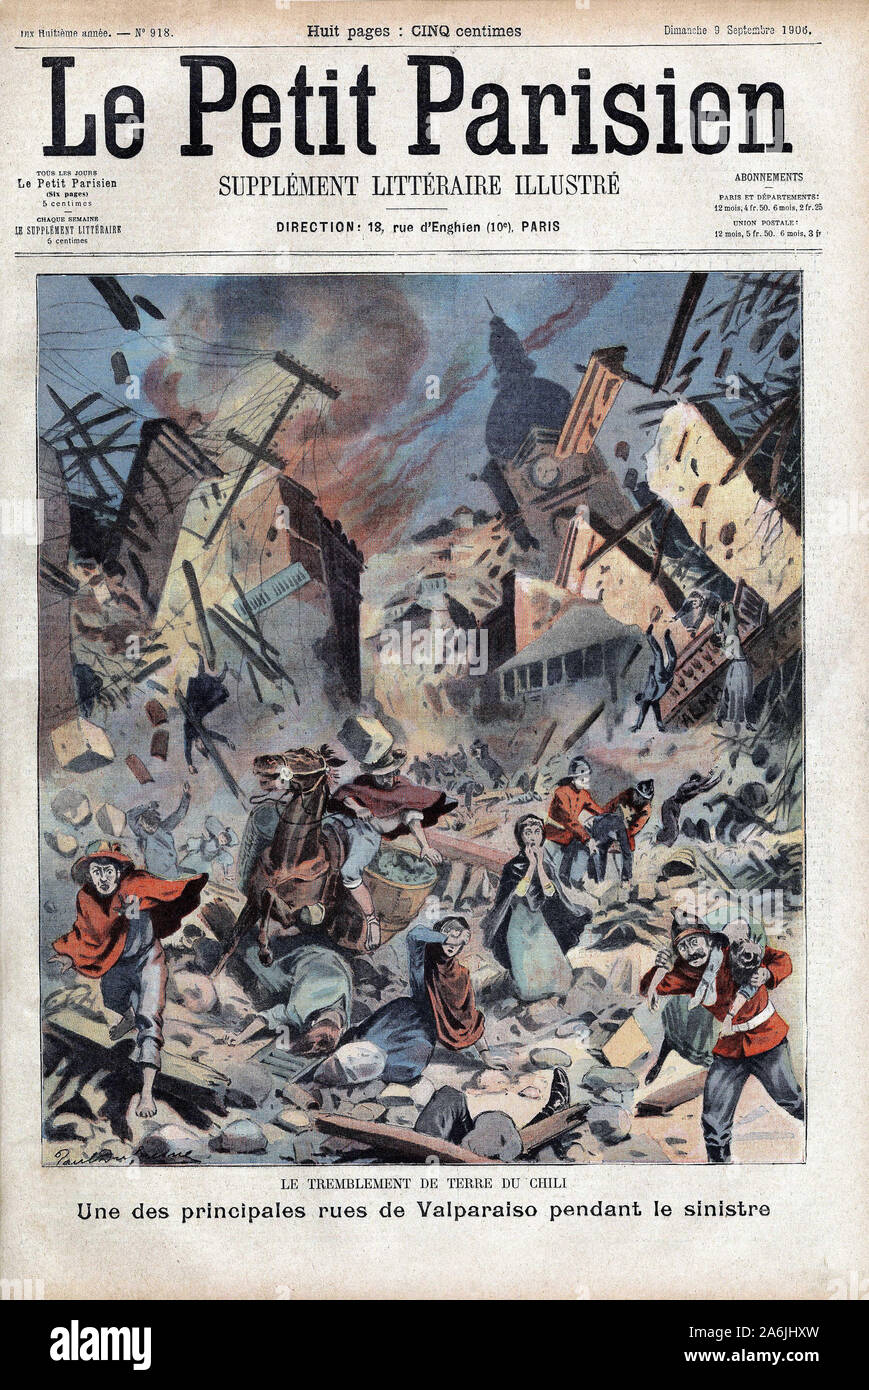 Un seisme de 8,2 sur l'échelle de Richter fait 3000 morts et 20000 blesses a Valparaiso au Chili, le 16 aout 1906. Gravure in "Le Petit Parisien", le Stock Photo